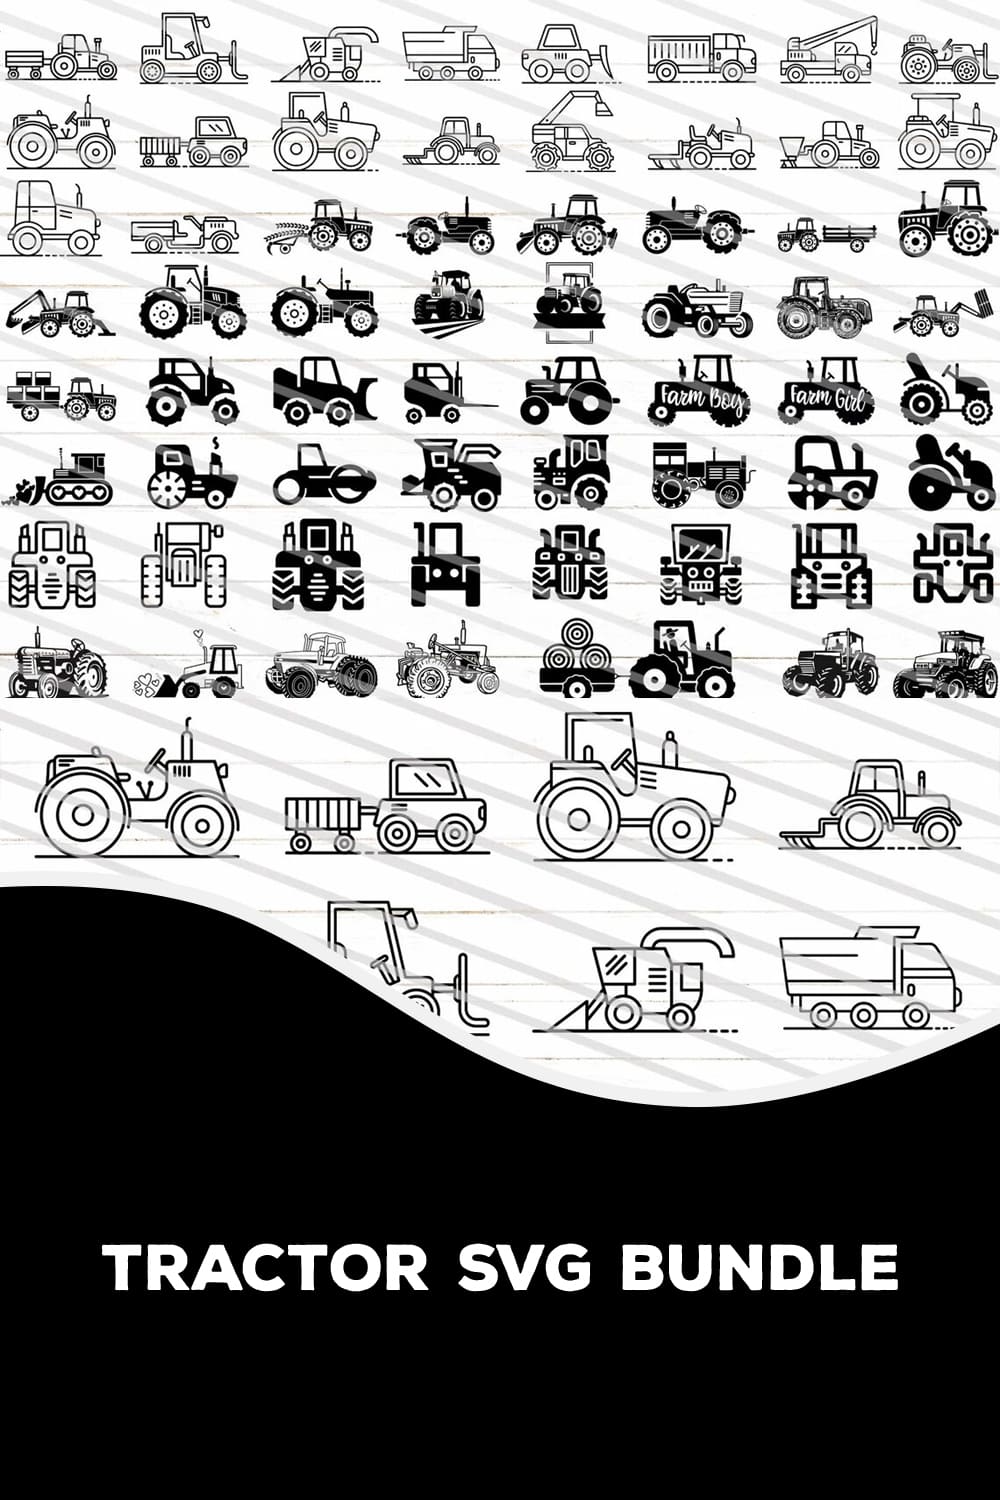 Tractor SVG Bundle pinterest image.